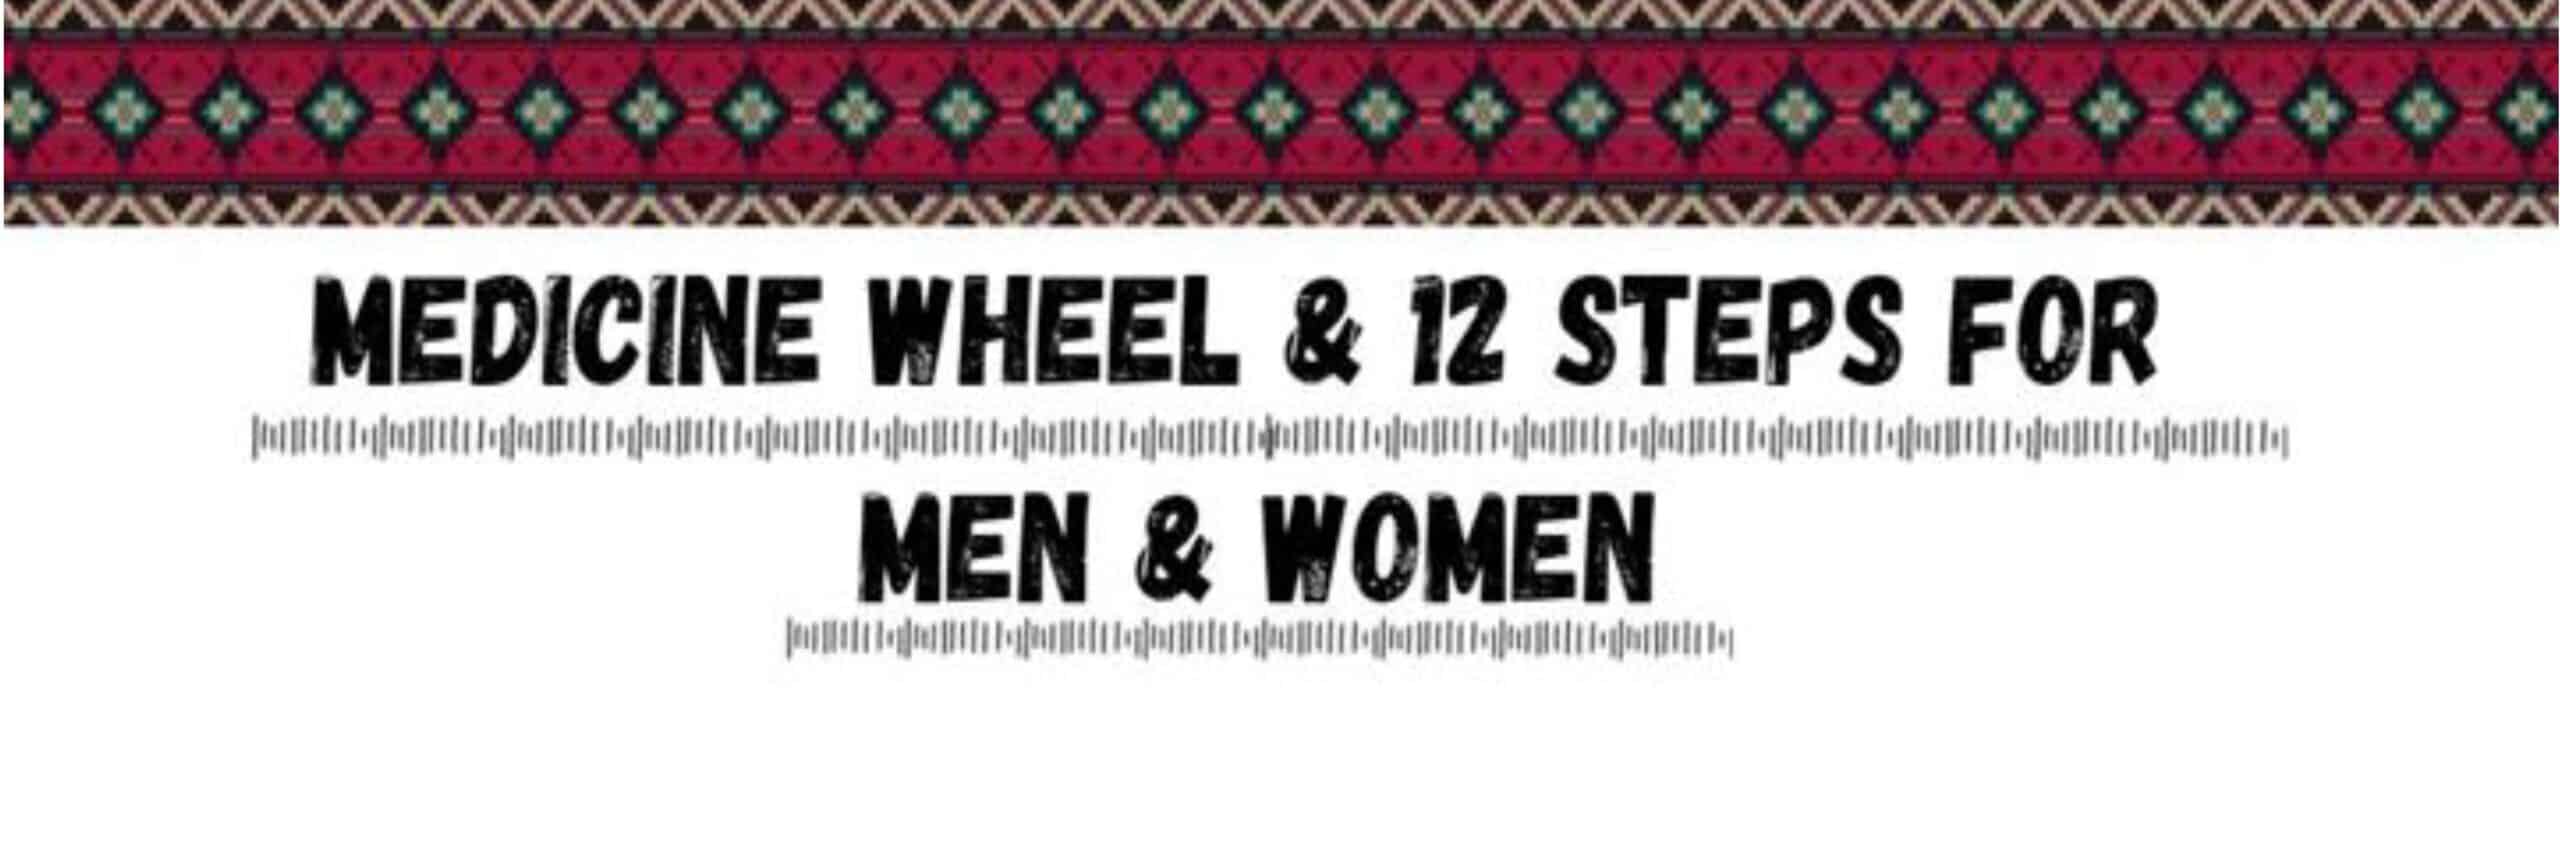 Medicine Wheel & 12 Steps for Men and Women (November 15-17, 2022)